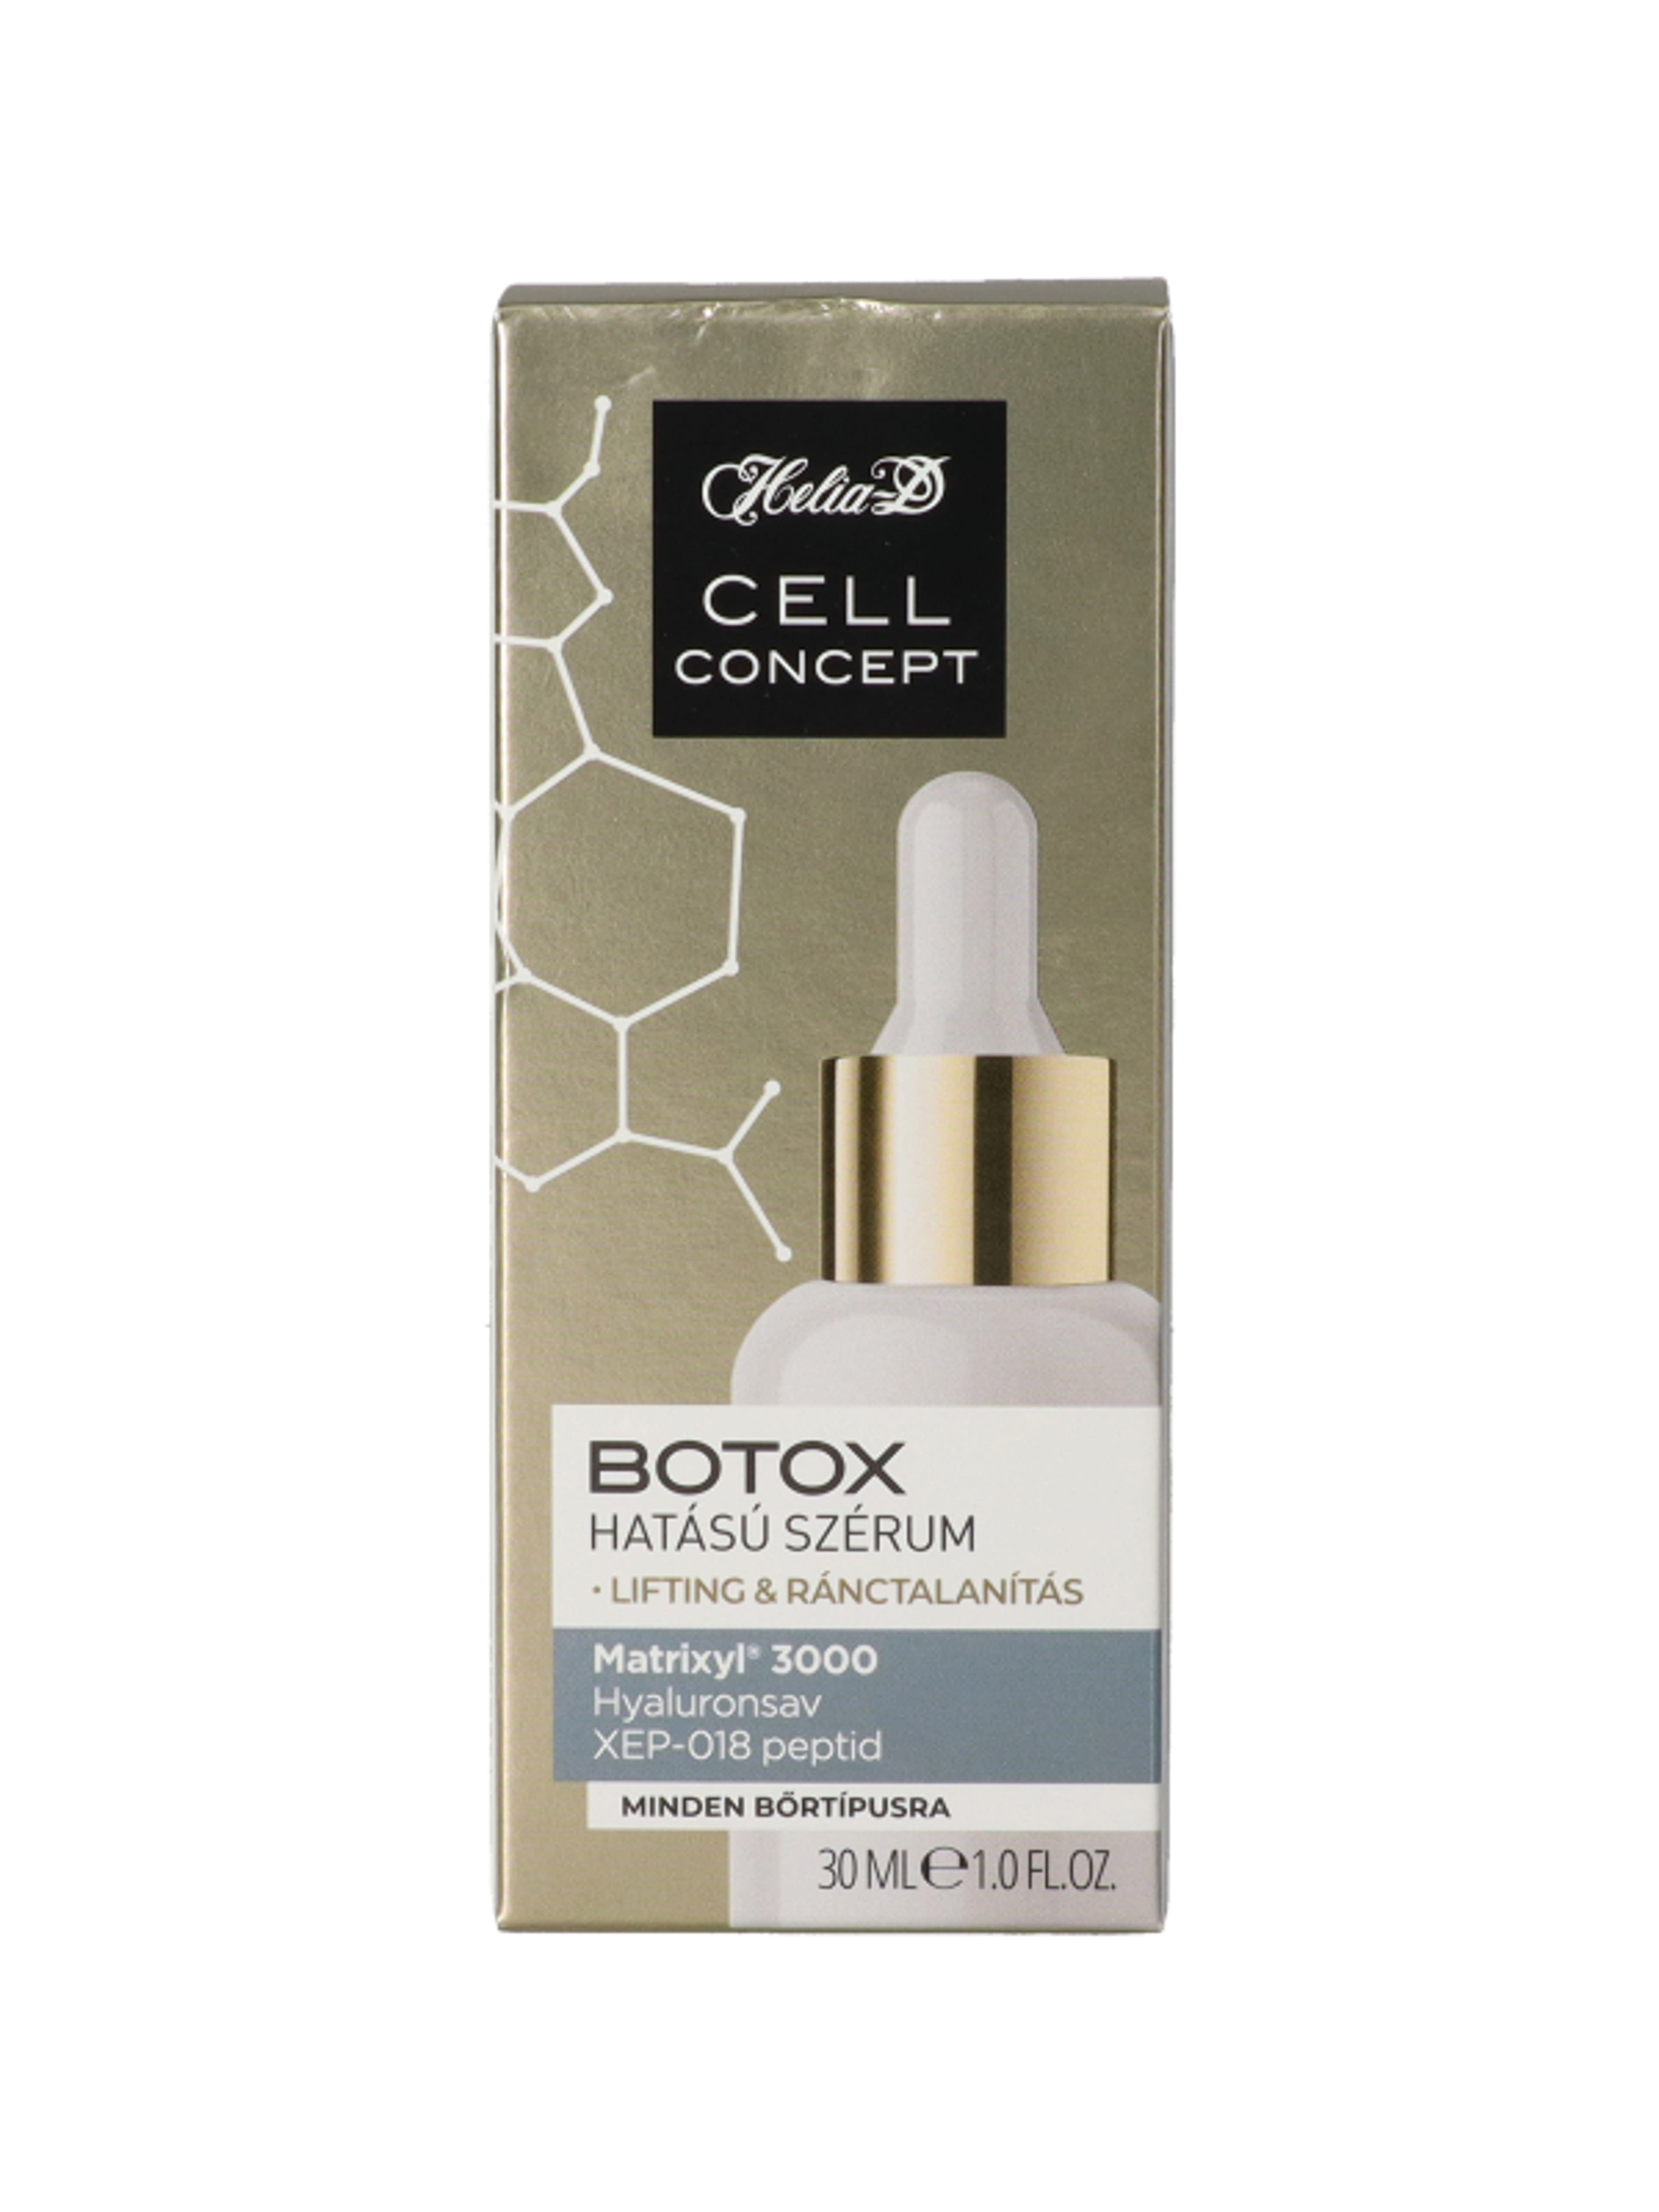 Helia-D Cell Concept Botox hatású szérum - 30 ml-2